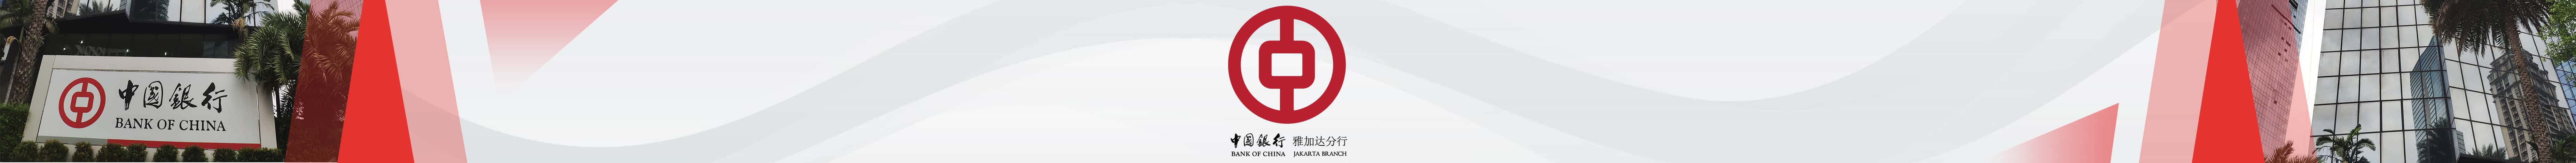 Iklan bank of china